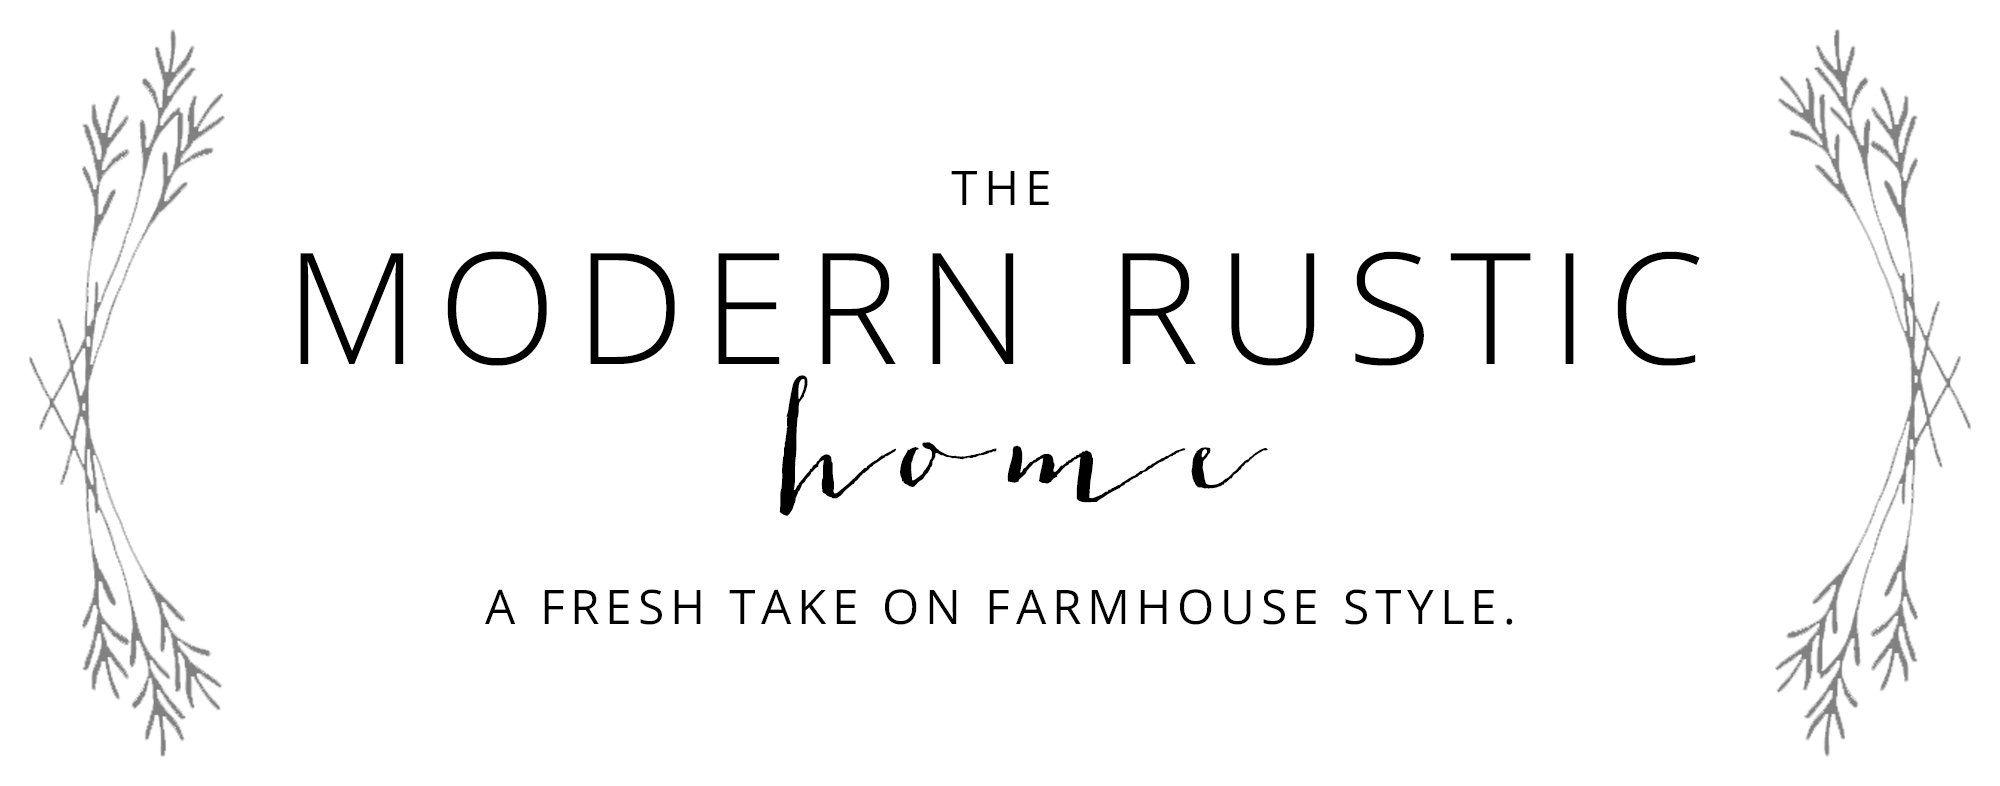 Rustic Farm Logo - BLOG